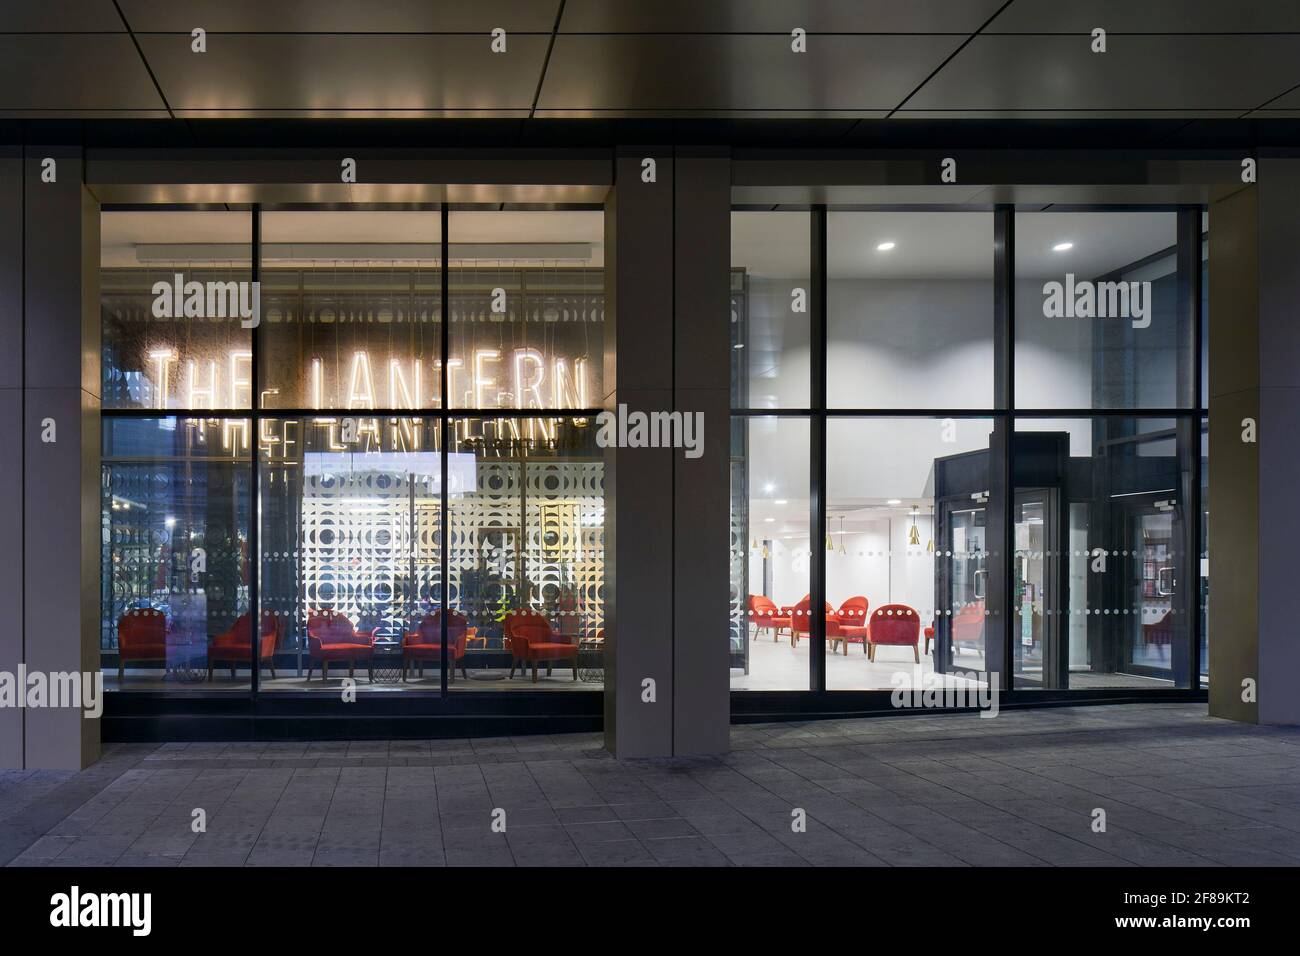 Façade extérieure - fenêtres avec vue avant. Lantern Student Accommodation, Liverpool, Royaume-Uni. Architecte: Naomi Cleaver, 2020. Banque D'Images